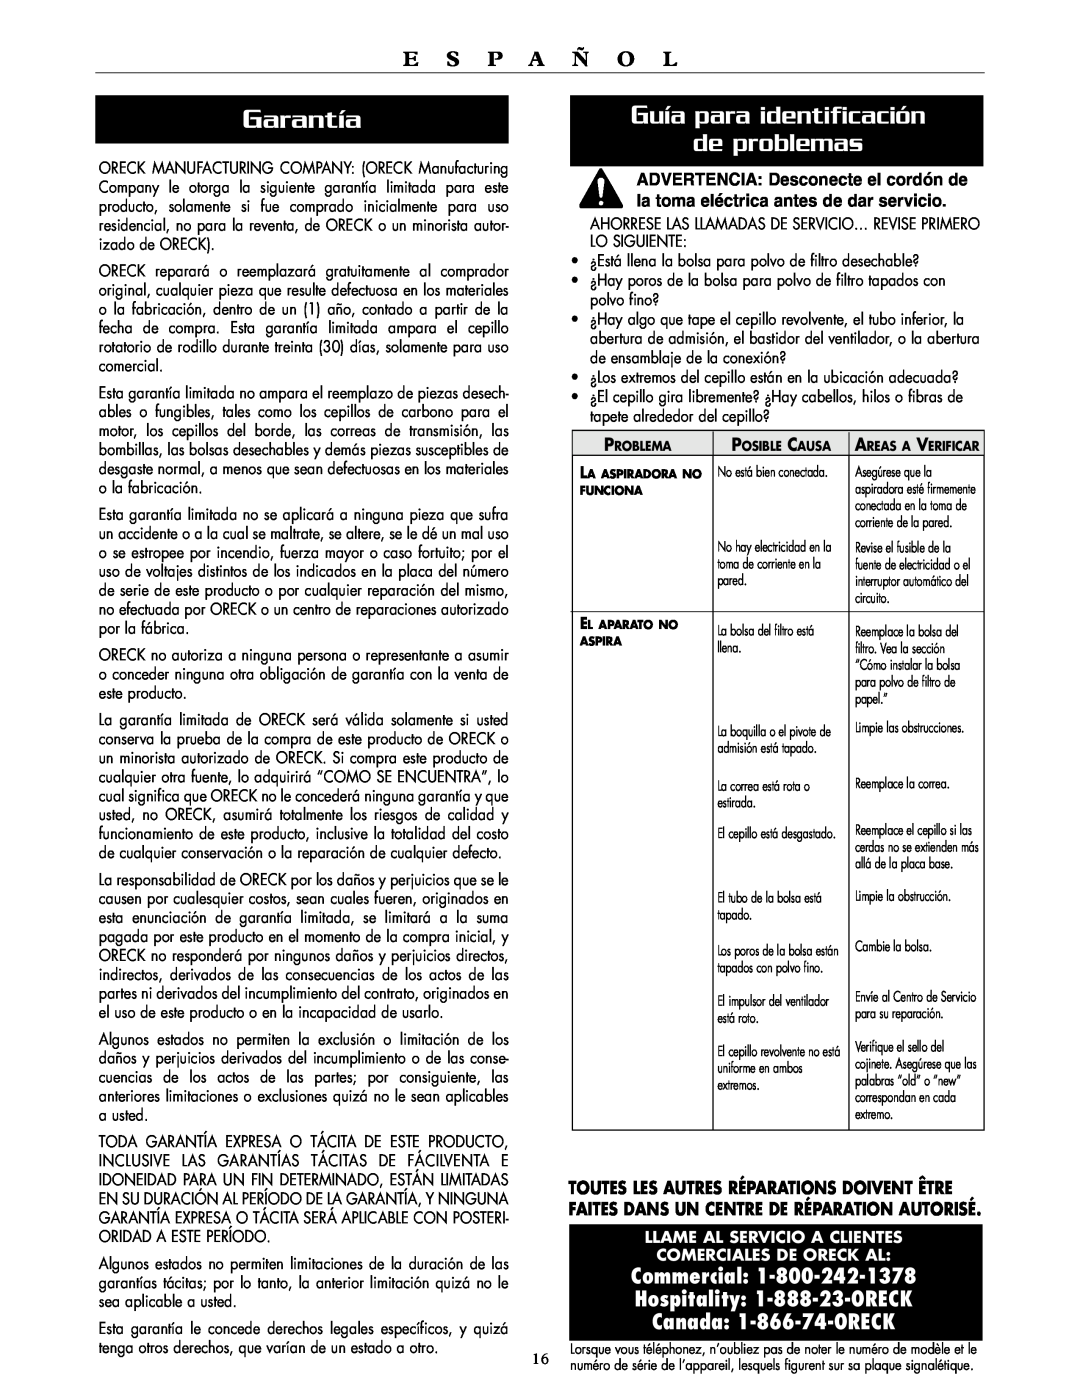 Oreck XL2000RS Garantía, Guía para identificación de problemas, E S P A Ñ O L, Commercial Hospitality 1-888-23-ORECK 